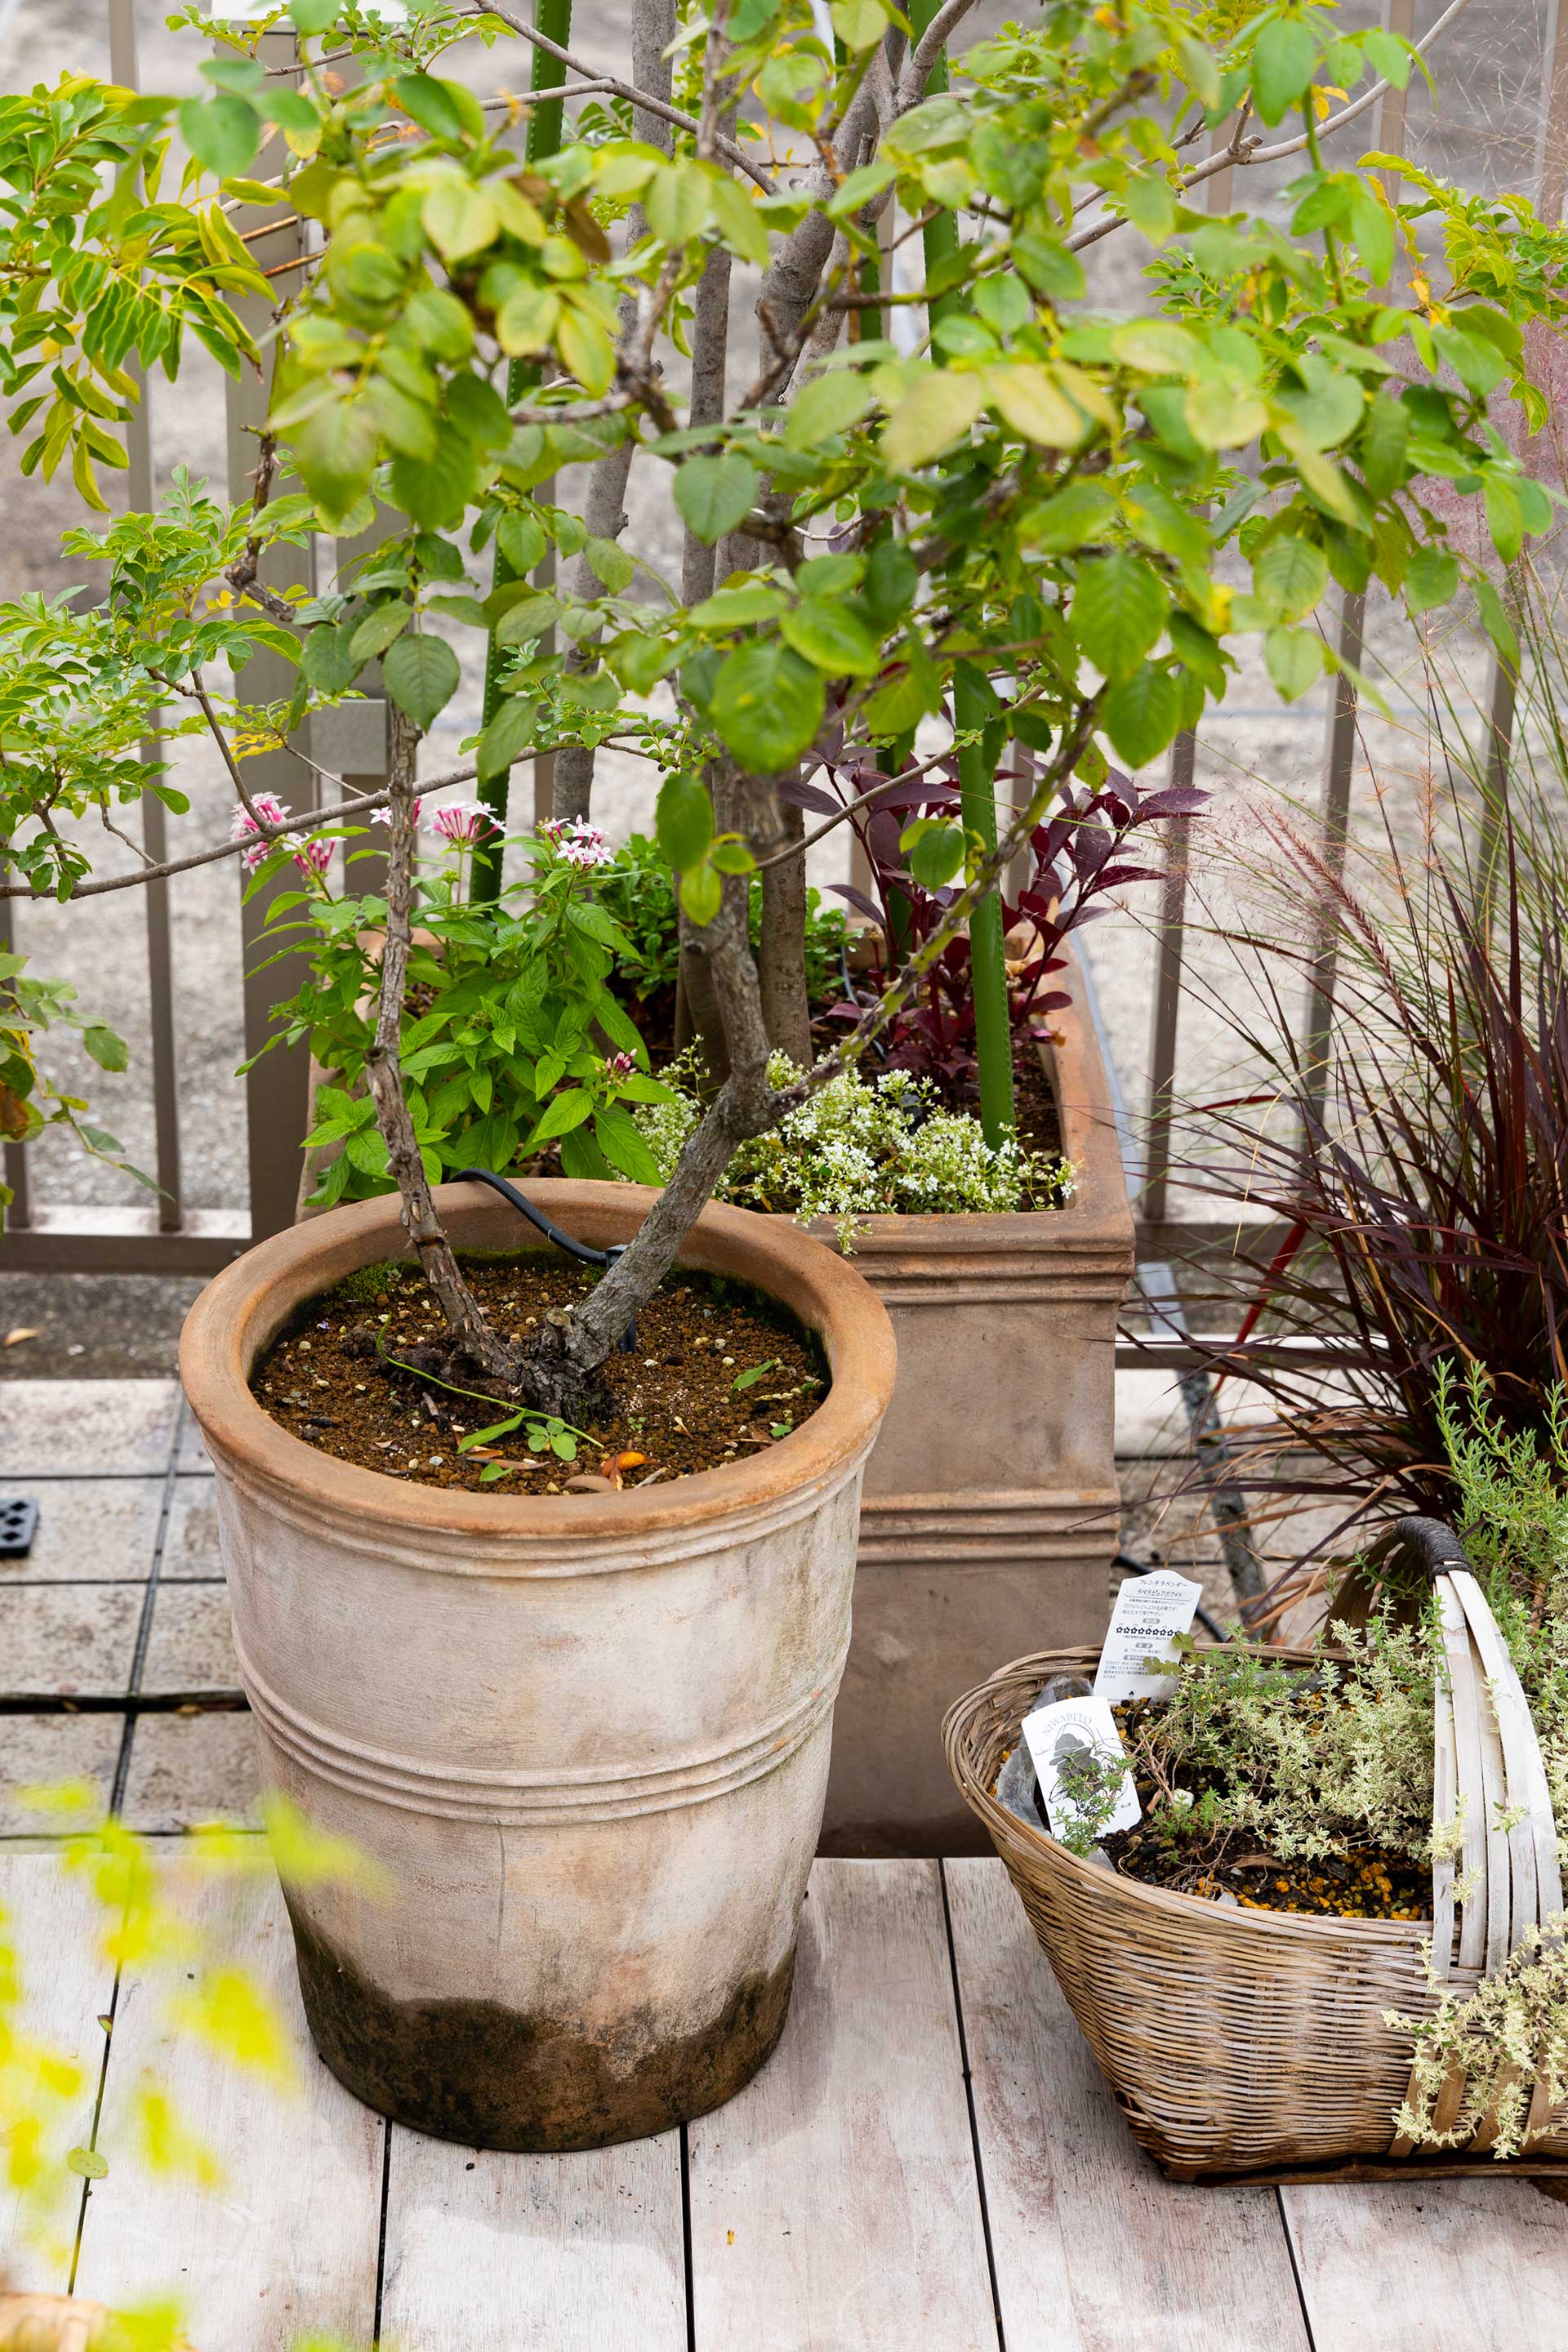 テラコッタの鉢に、ハーブの寄せ植えにはカゴを使用。様々なアイテムを取り入れて。